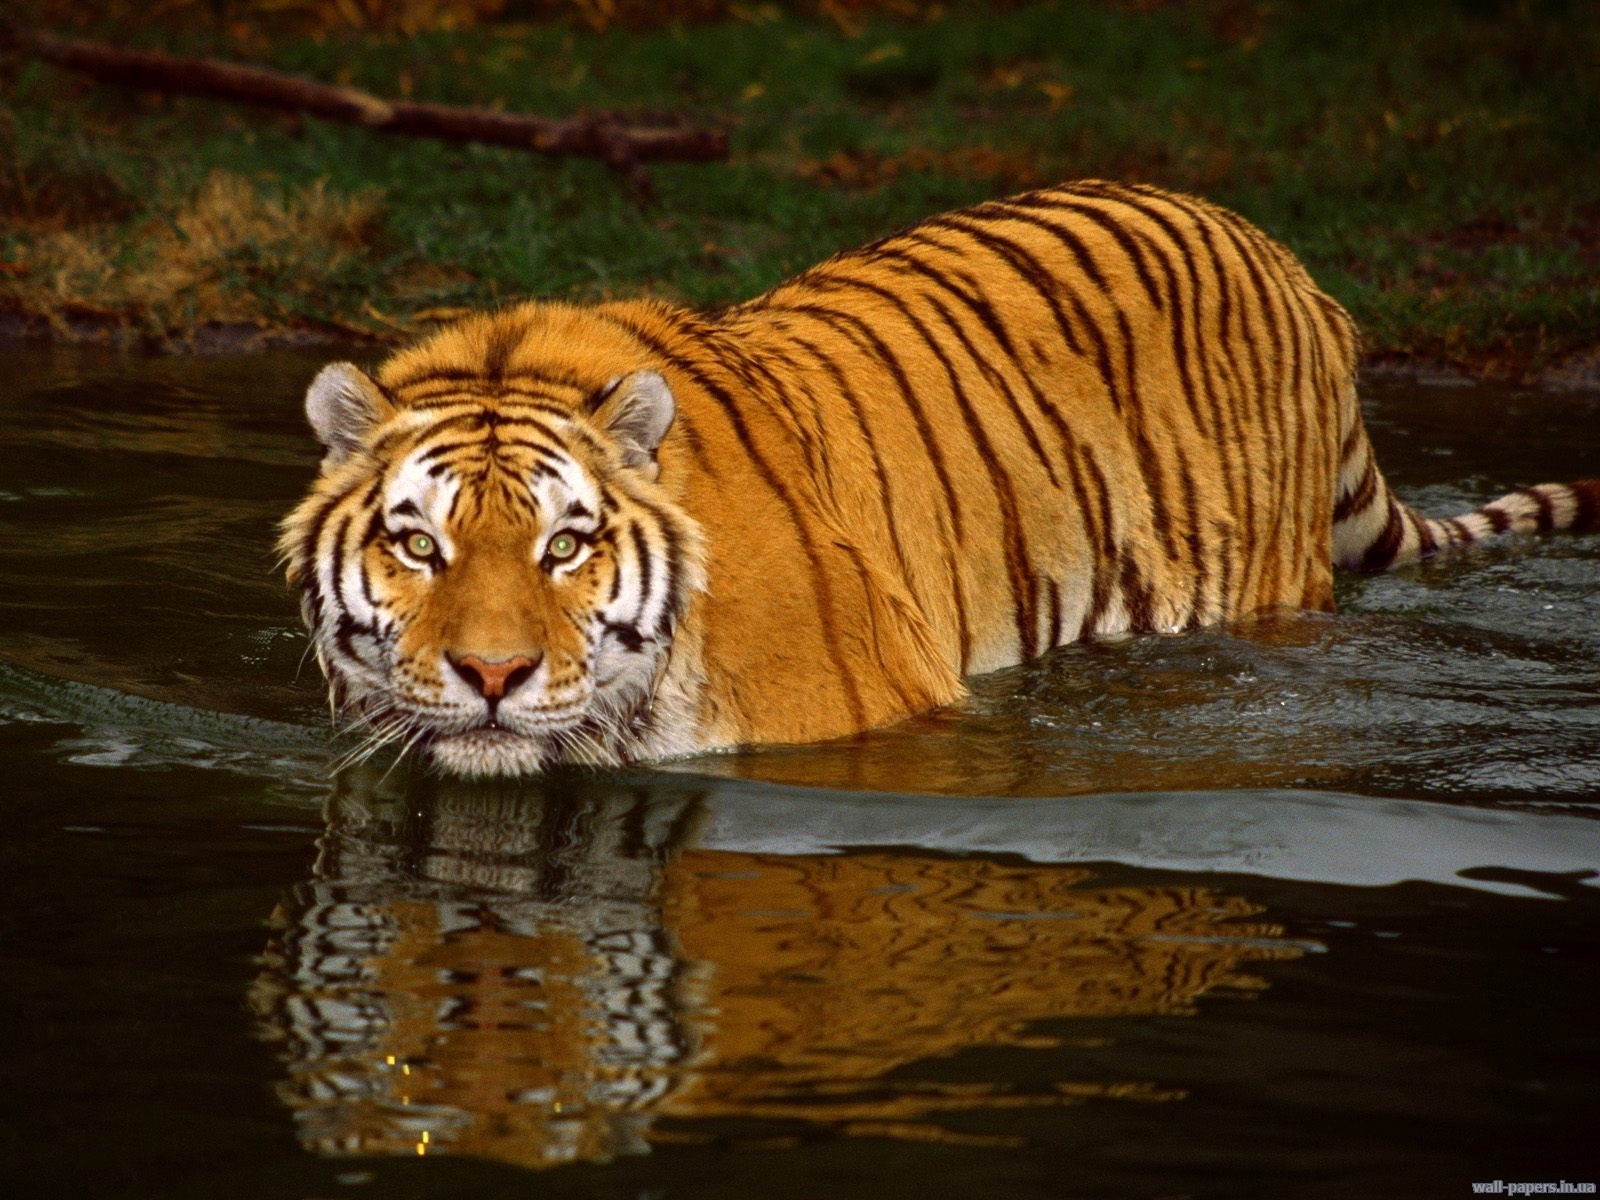 Скачать обои бесплатно Тигры, Животные, Вода картинка на рабочий стол ПК